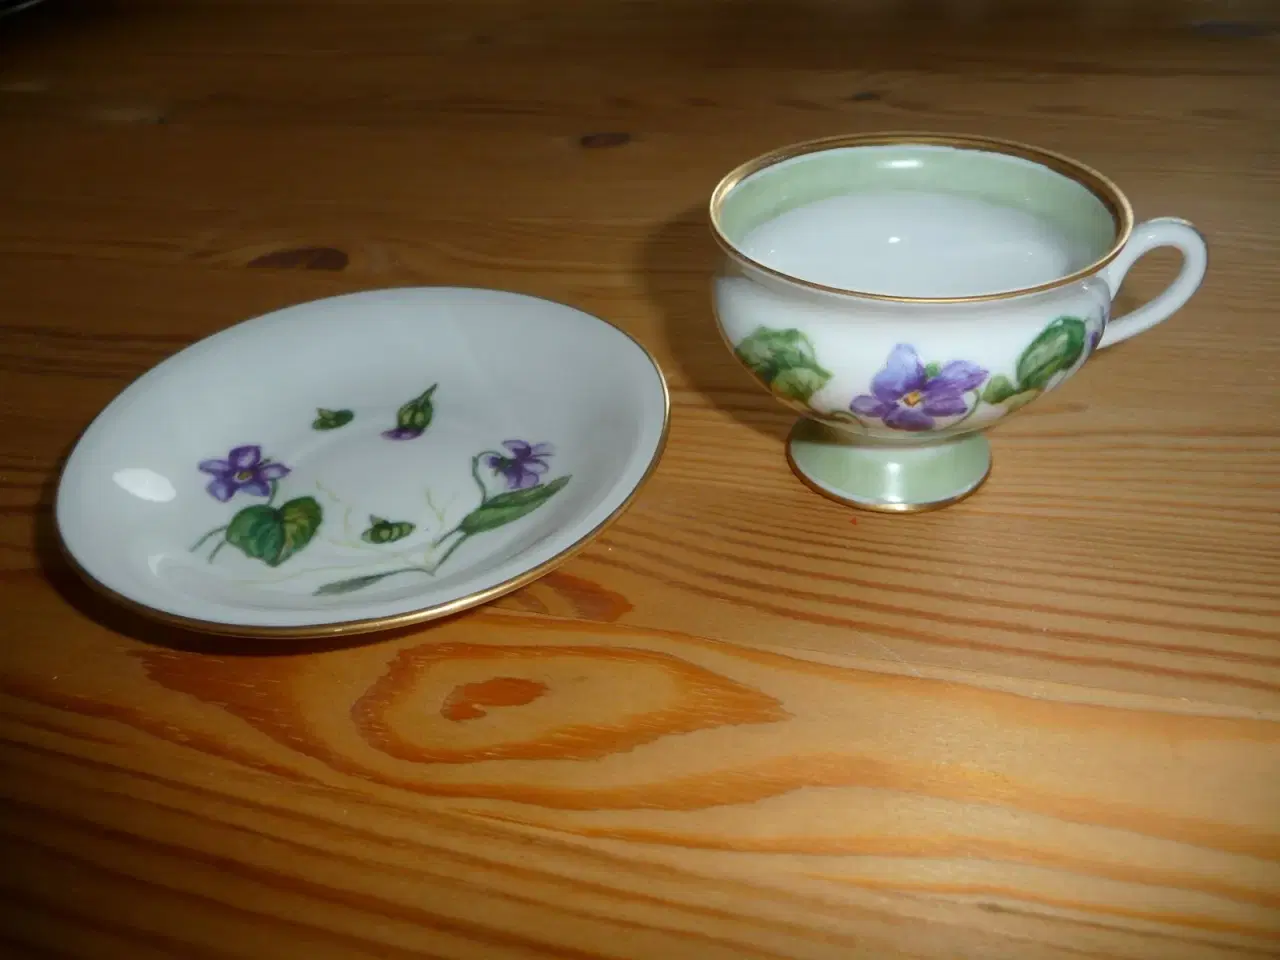 Billede 2 - mokka kop med violer